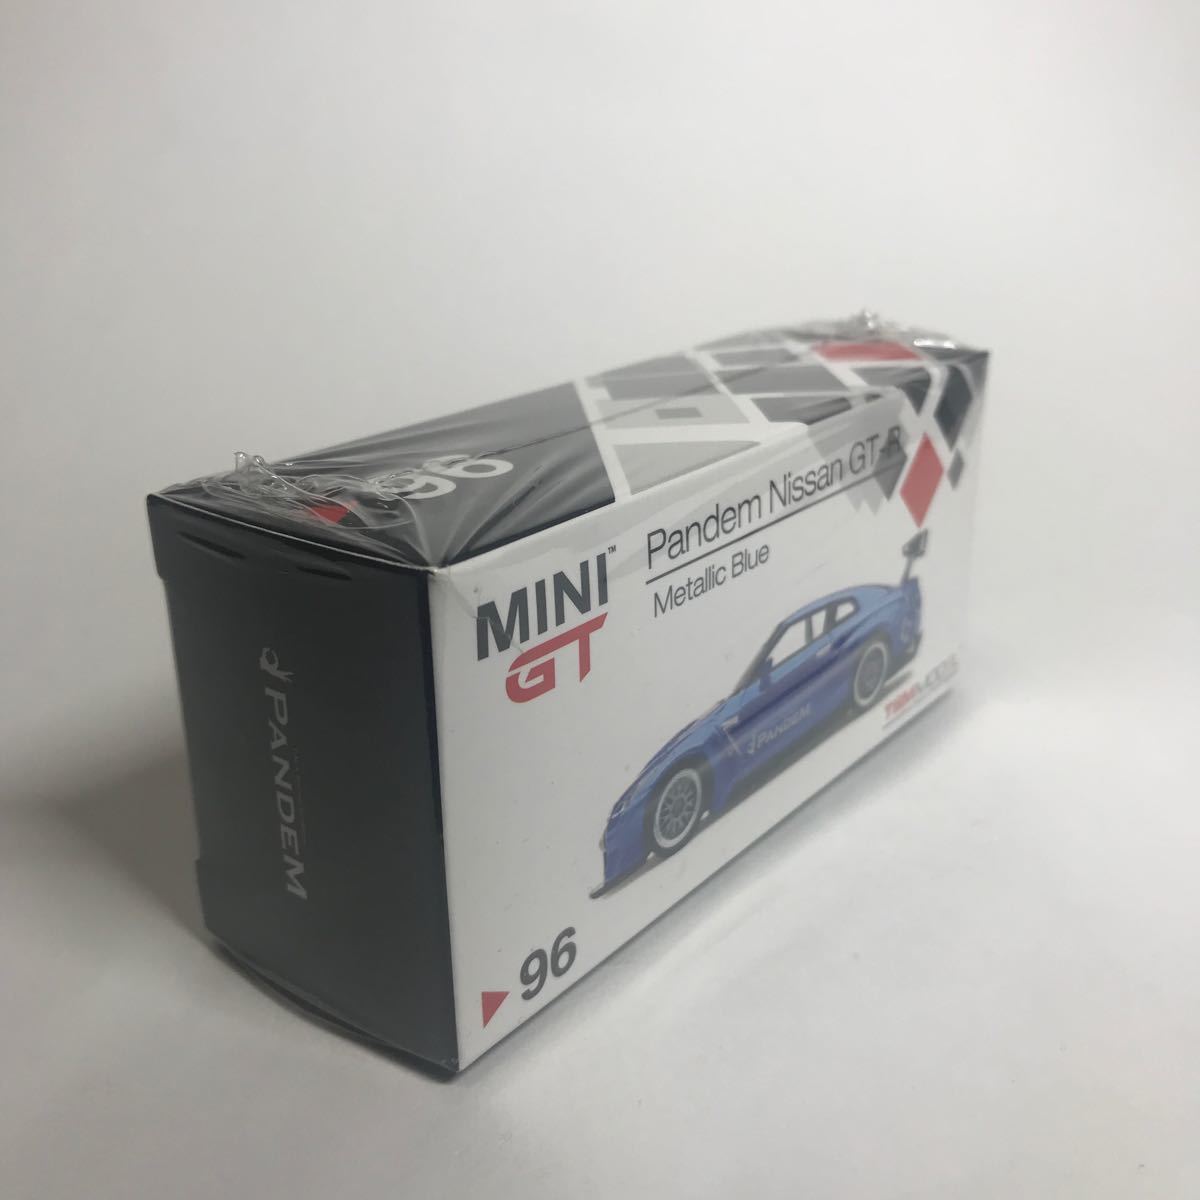 【未開封】MINI GT 1/64 96 Pandem Nissan GT-R ミニGT パンデム 日産 右ハンドル GT-R メタリックブルー_画像2